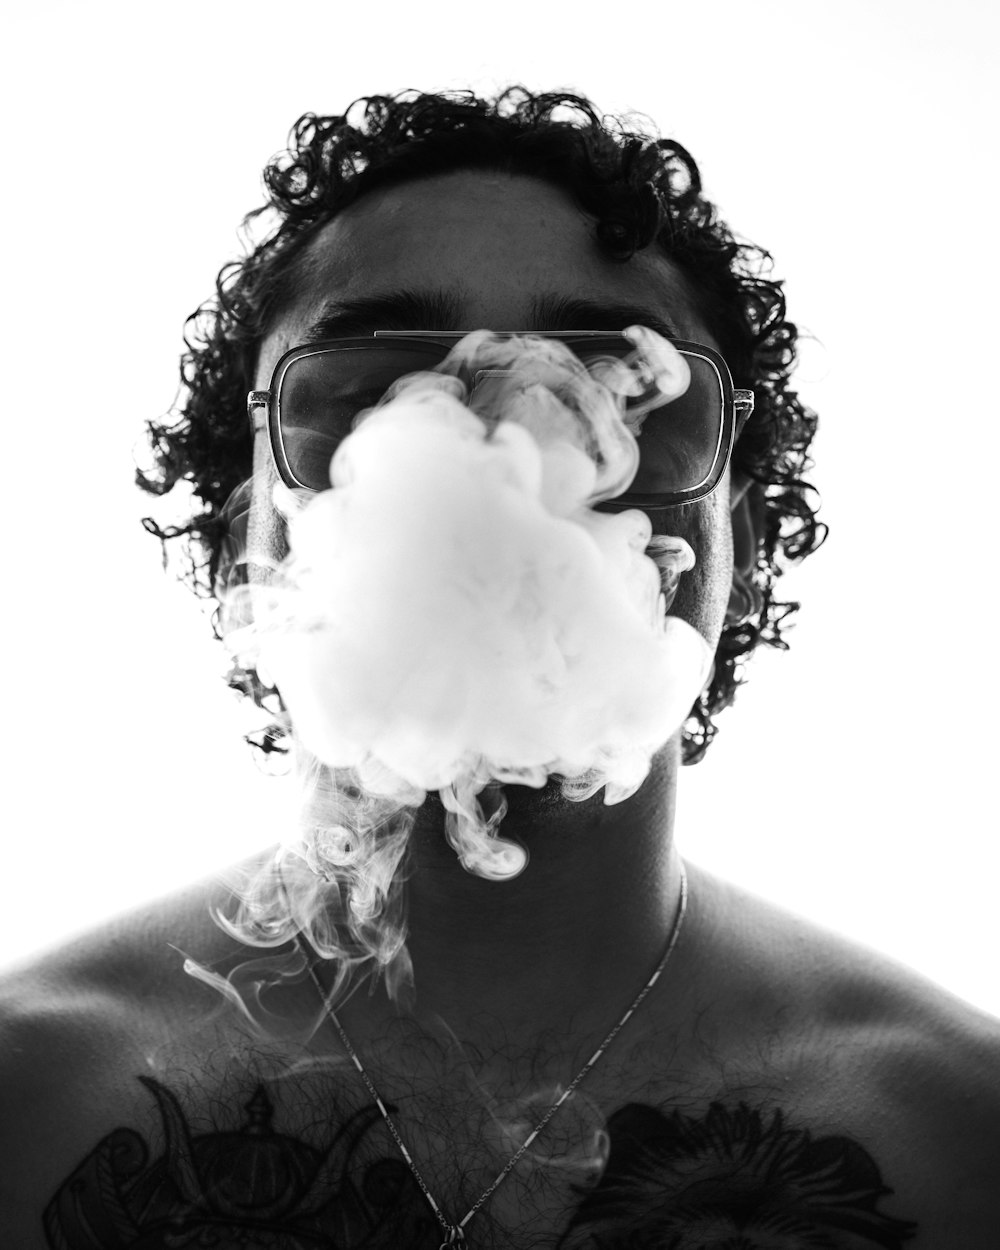 a man smoking a cloud of white smoke